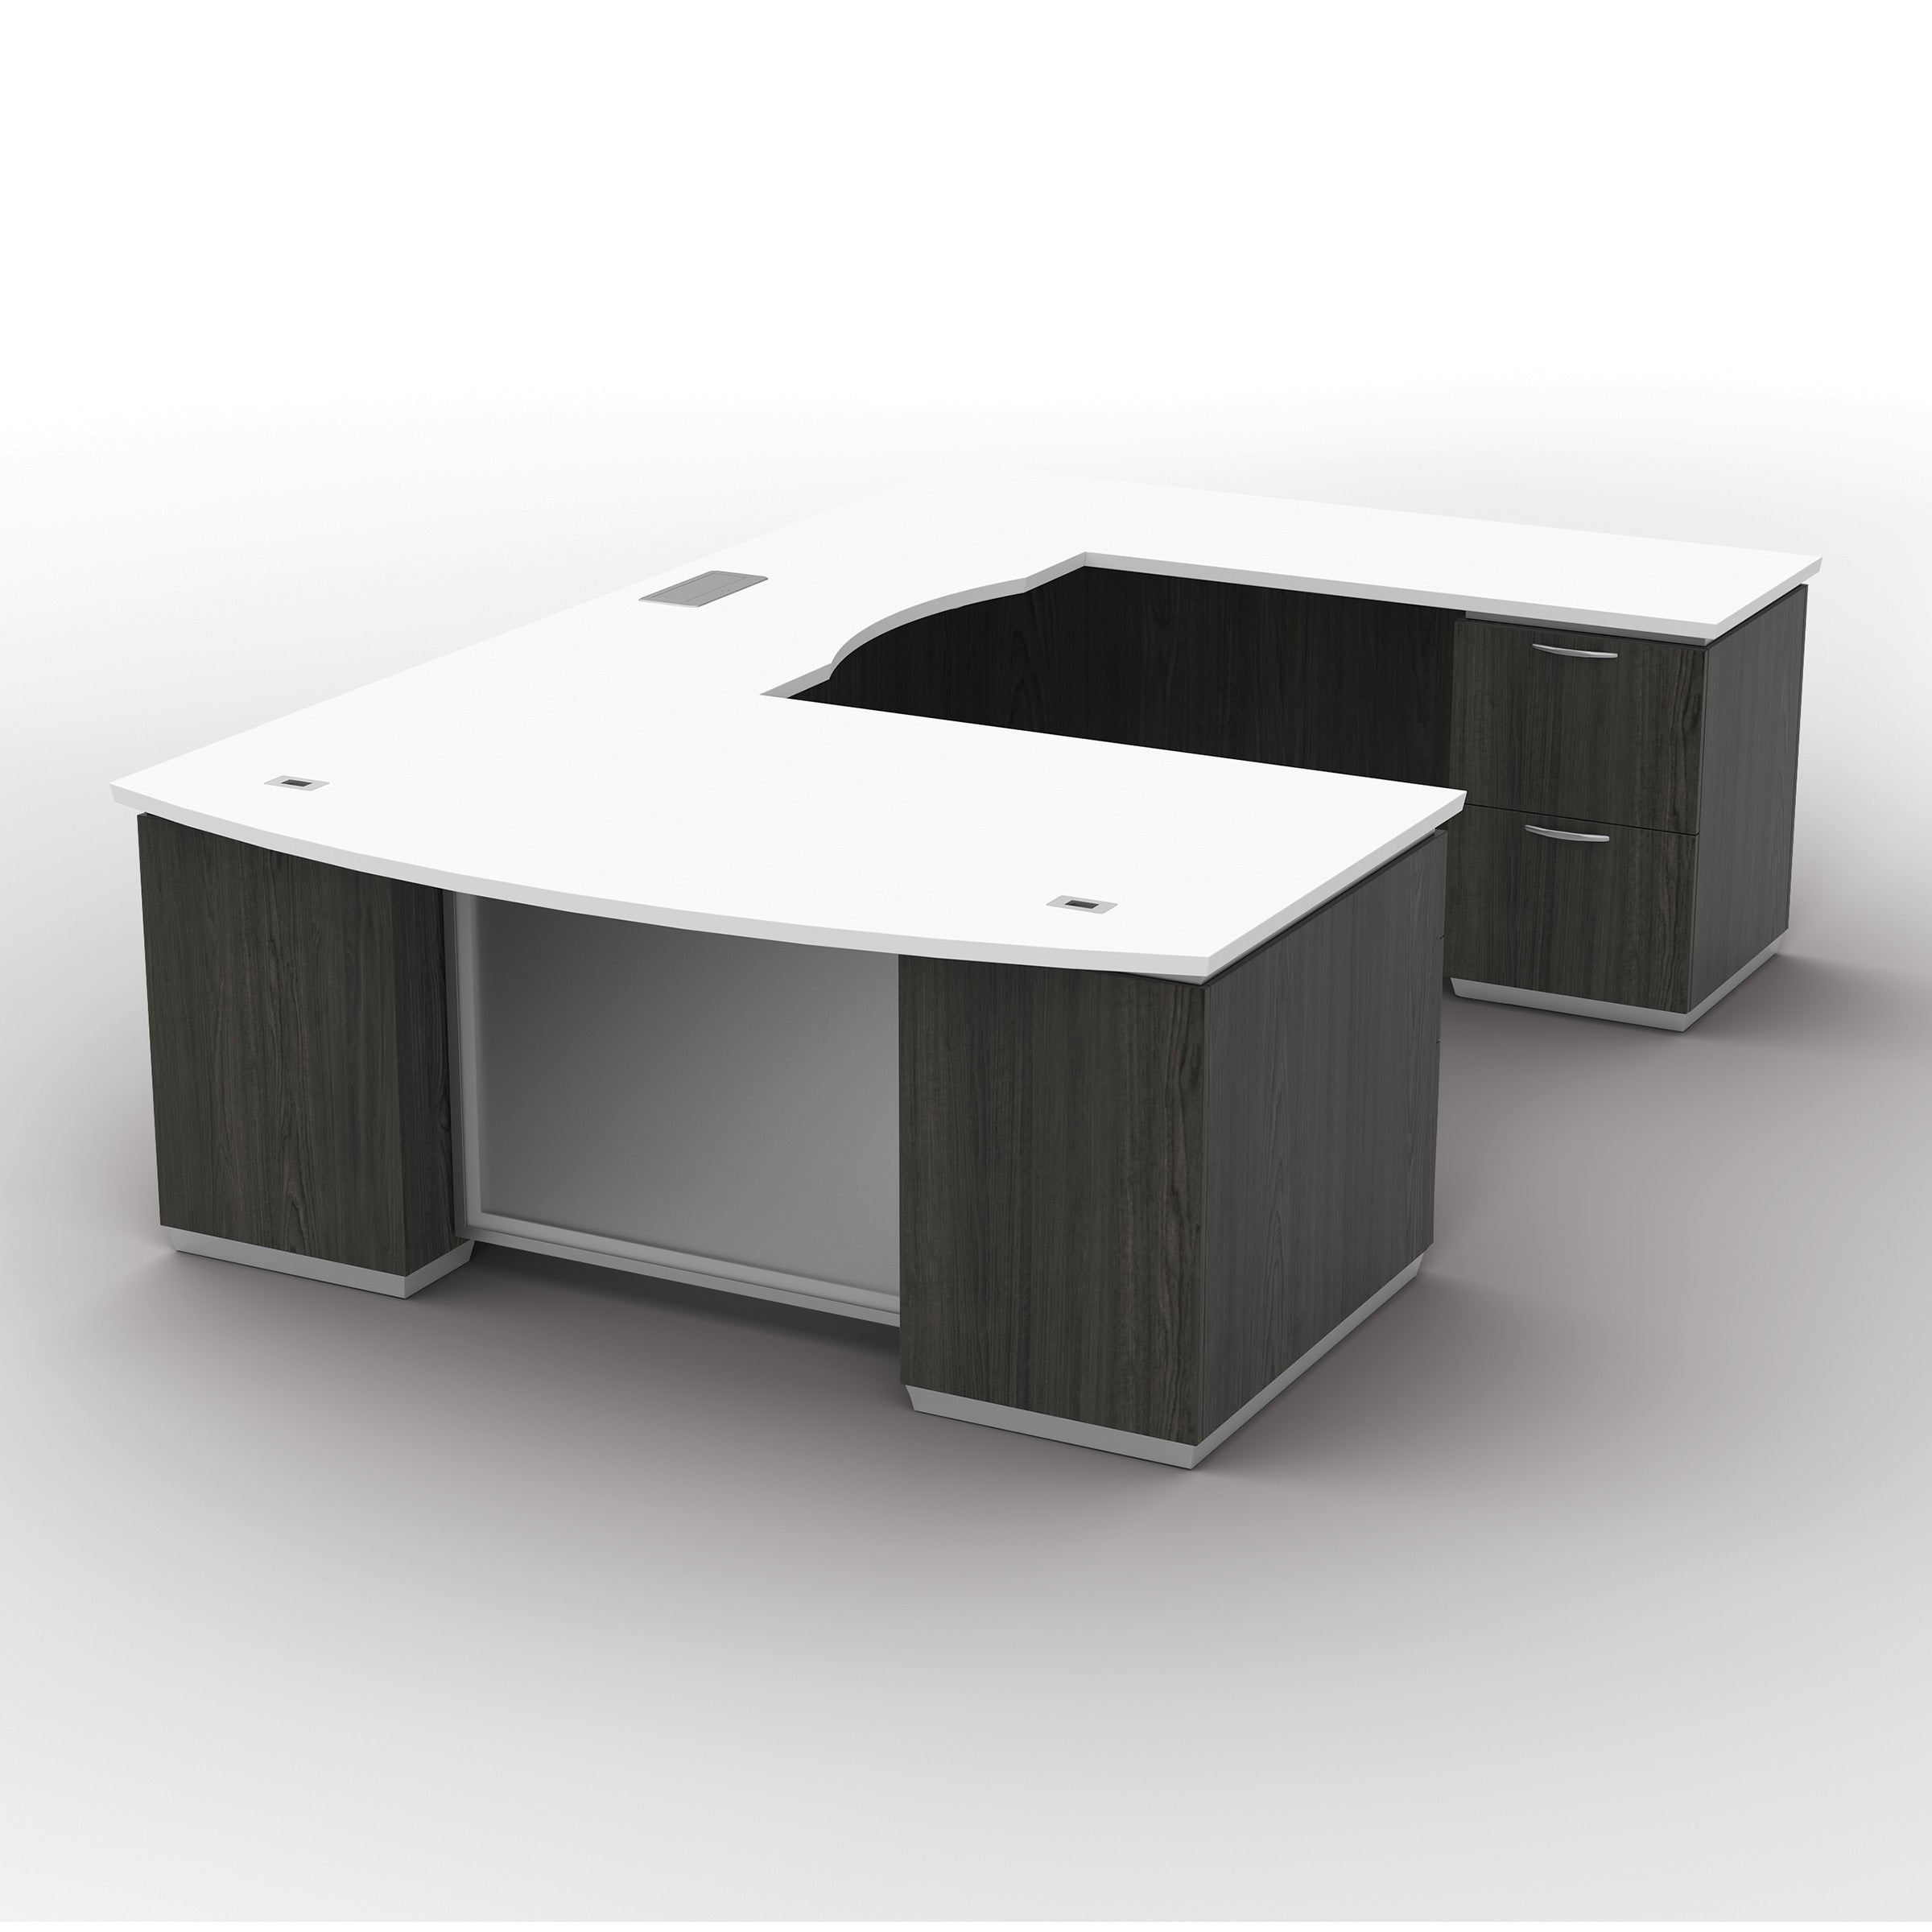 TUX-TYP22 - Tuxedo  'U' Shape Office Desk by OSP